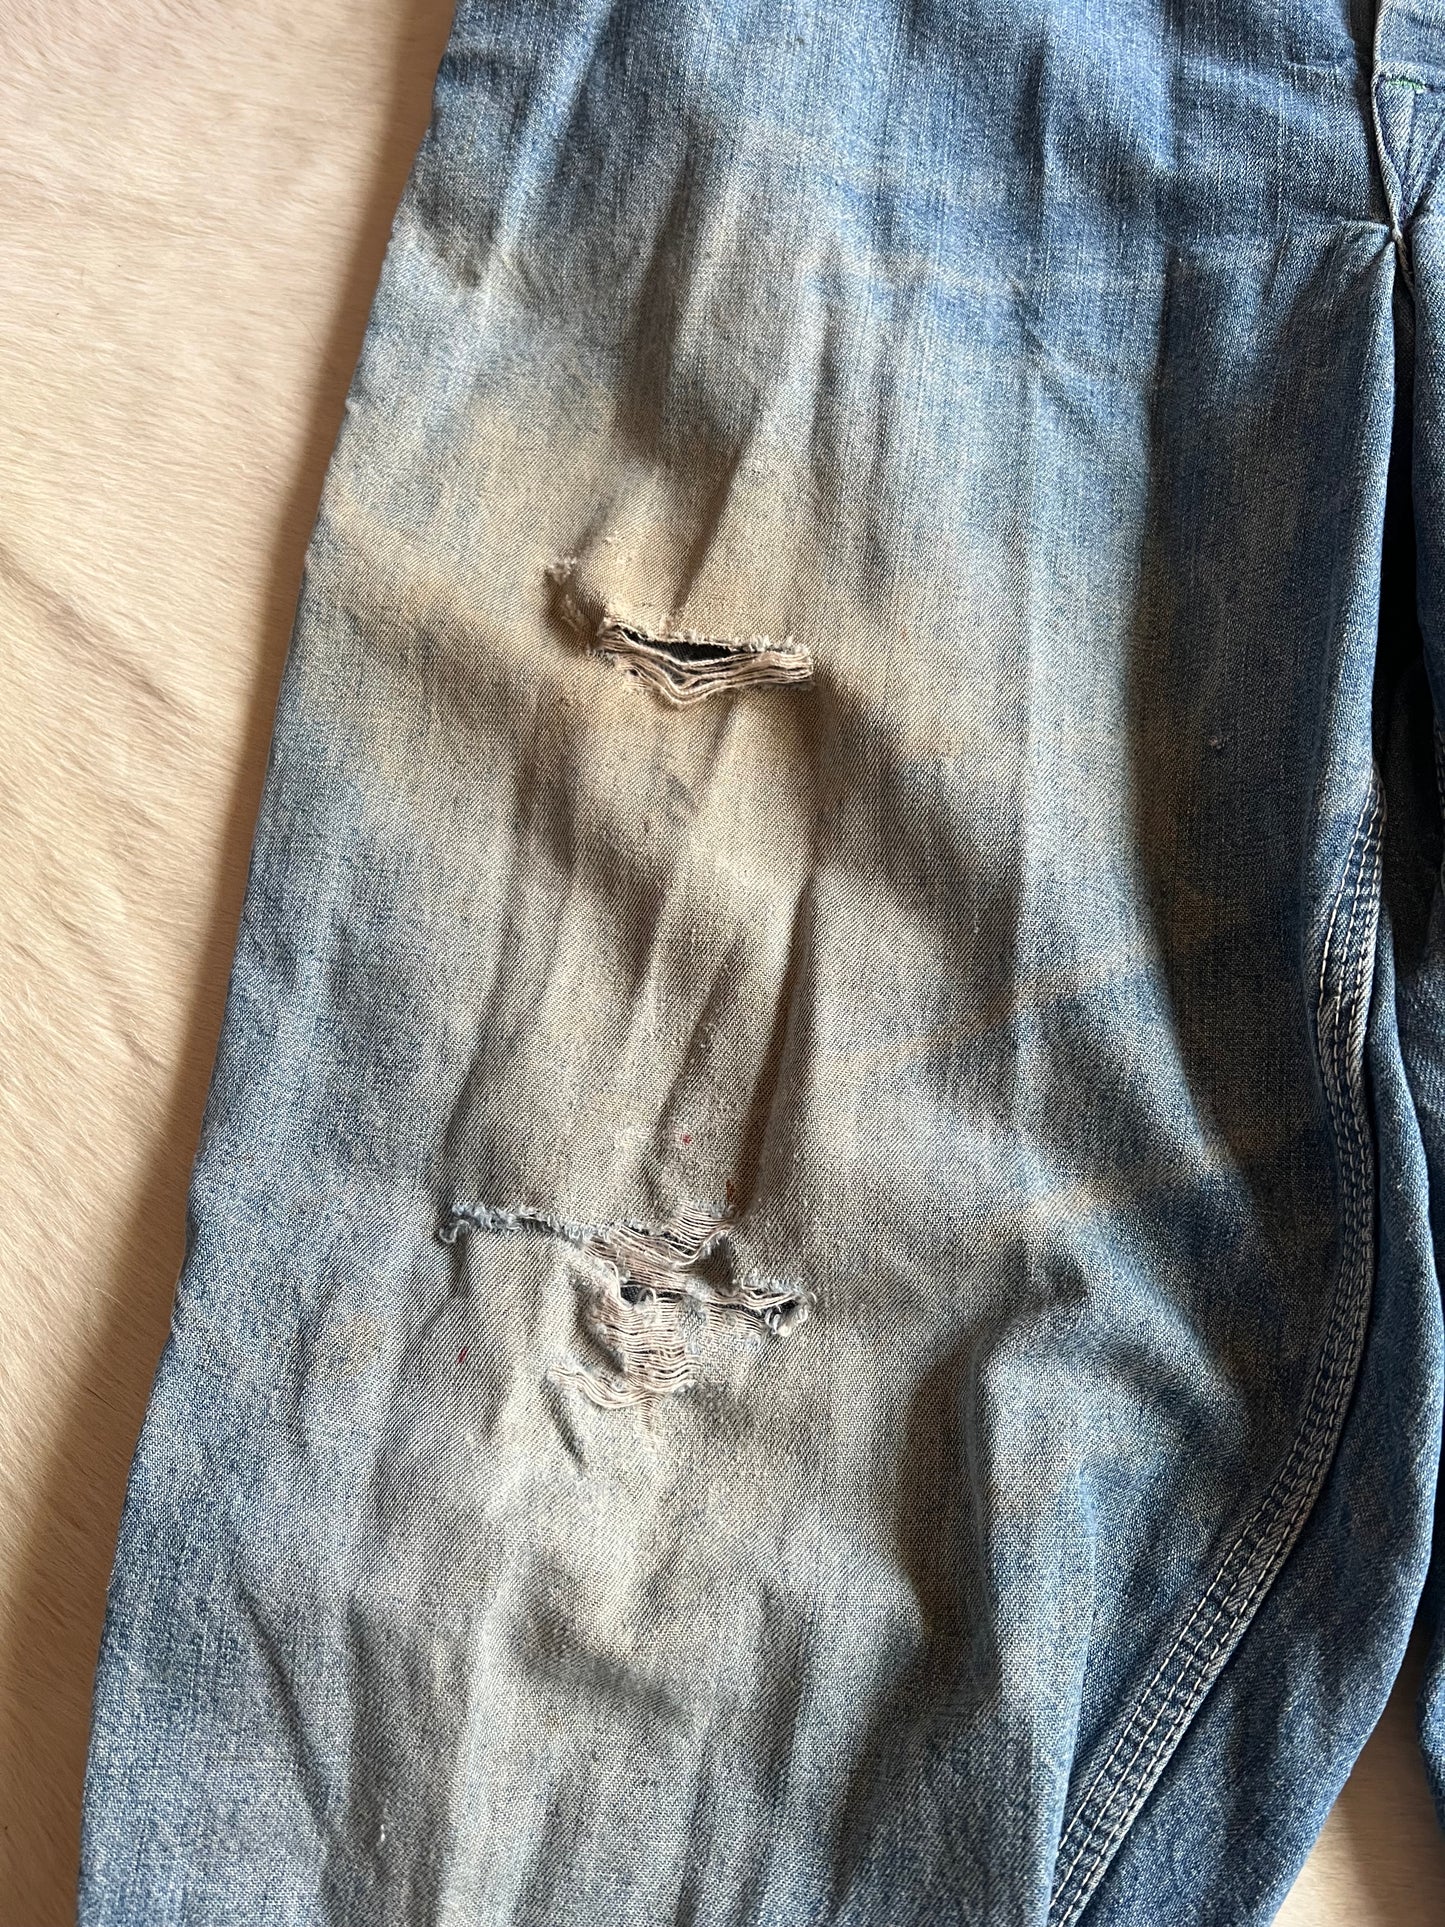 1980s Oshkosh worn in overalls